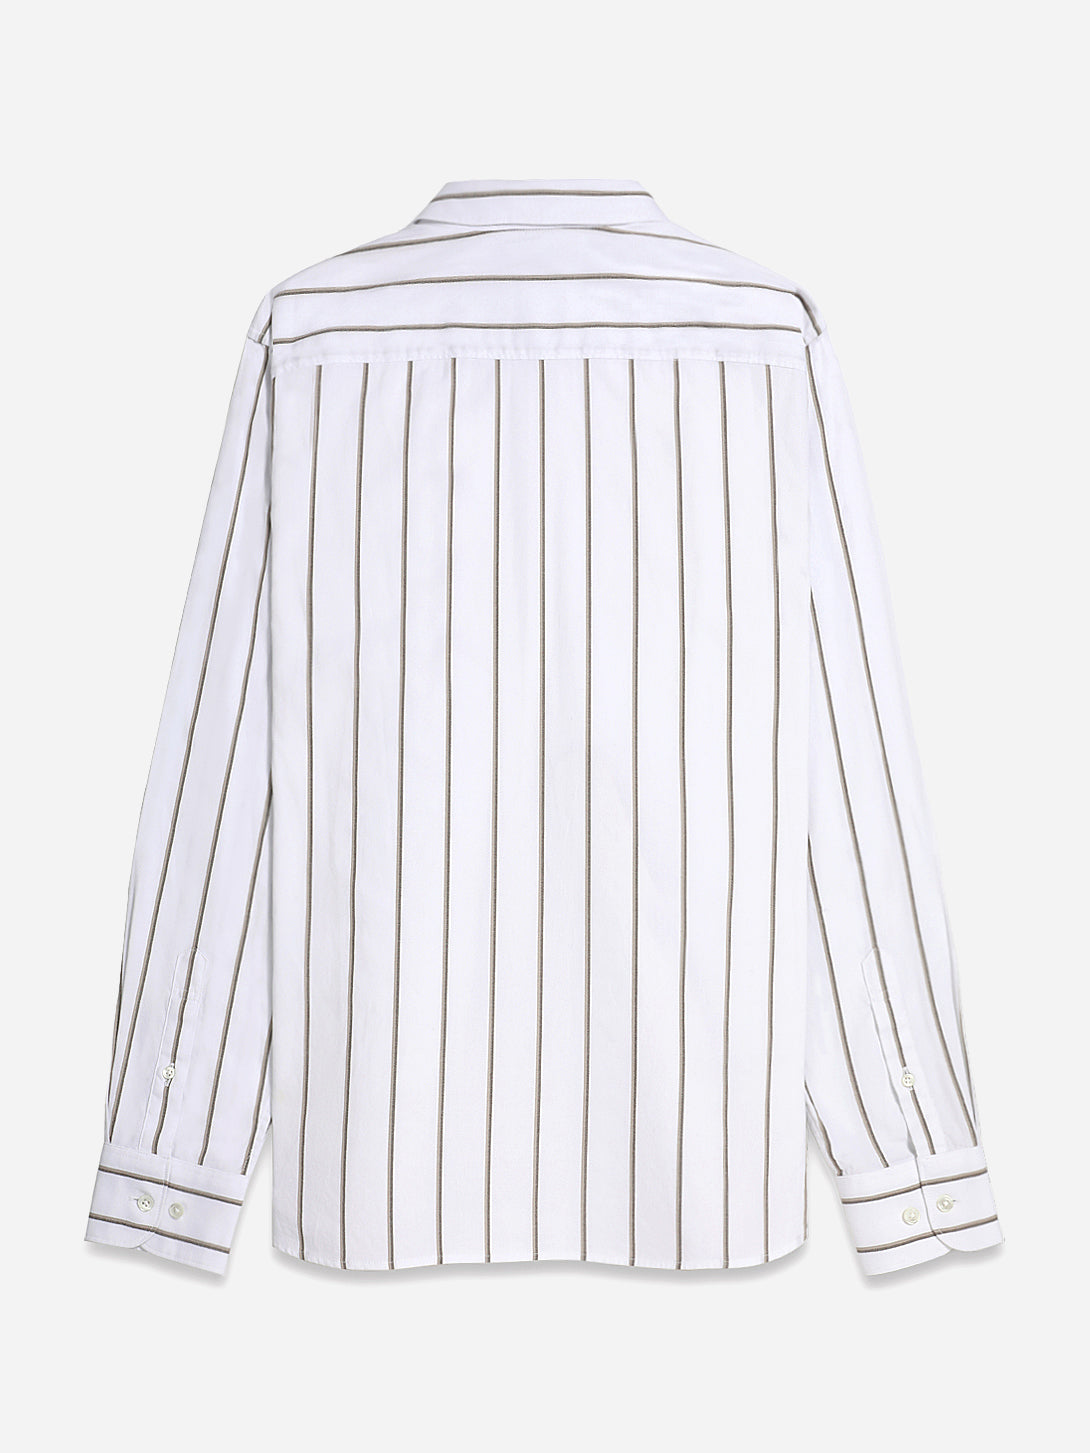 Khaki Stripe M. Fulton Y/D Stripe Shirt Button Down Cotton Woven O.N.S Clothing